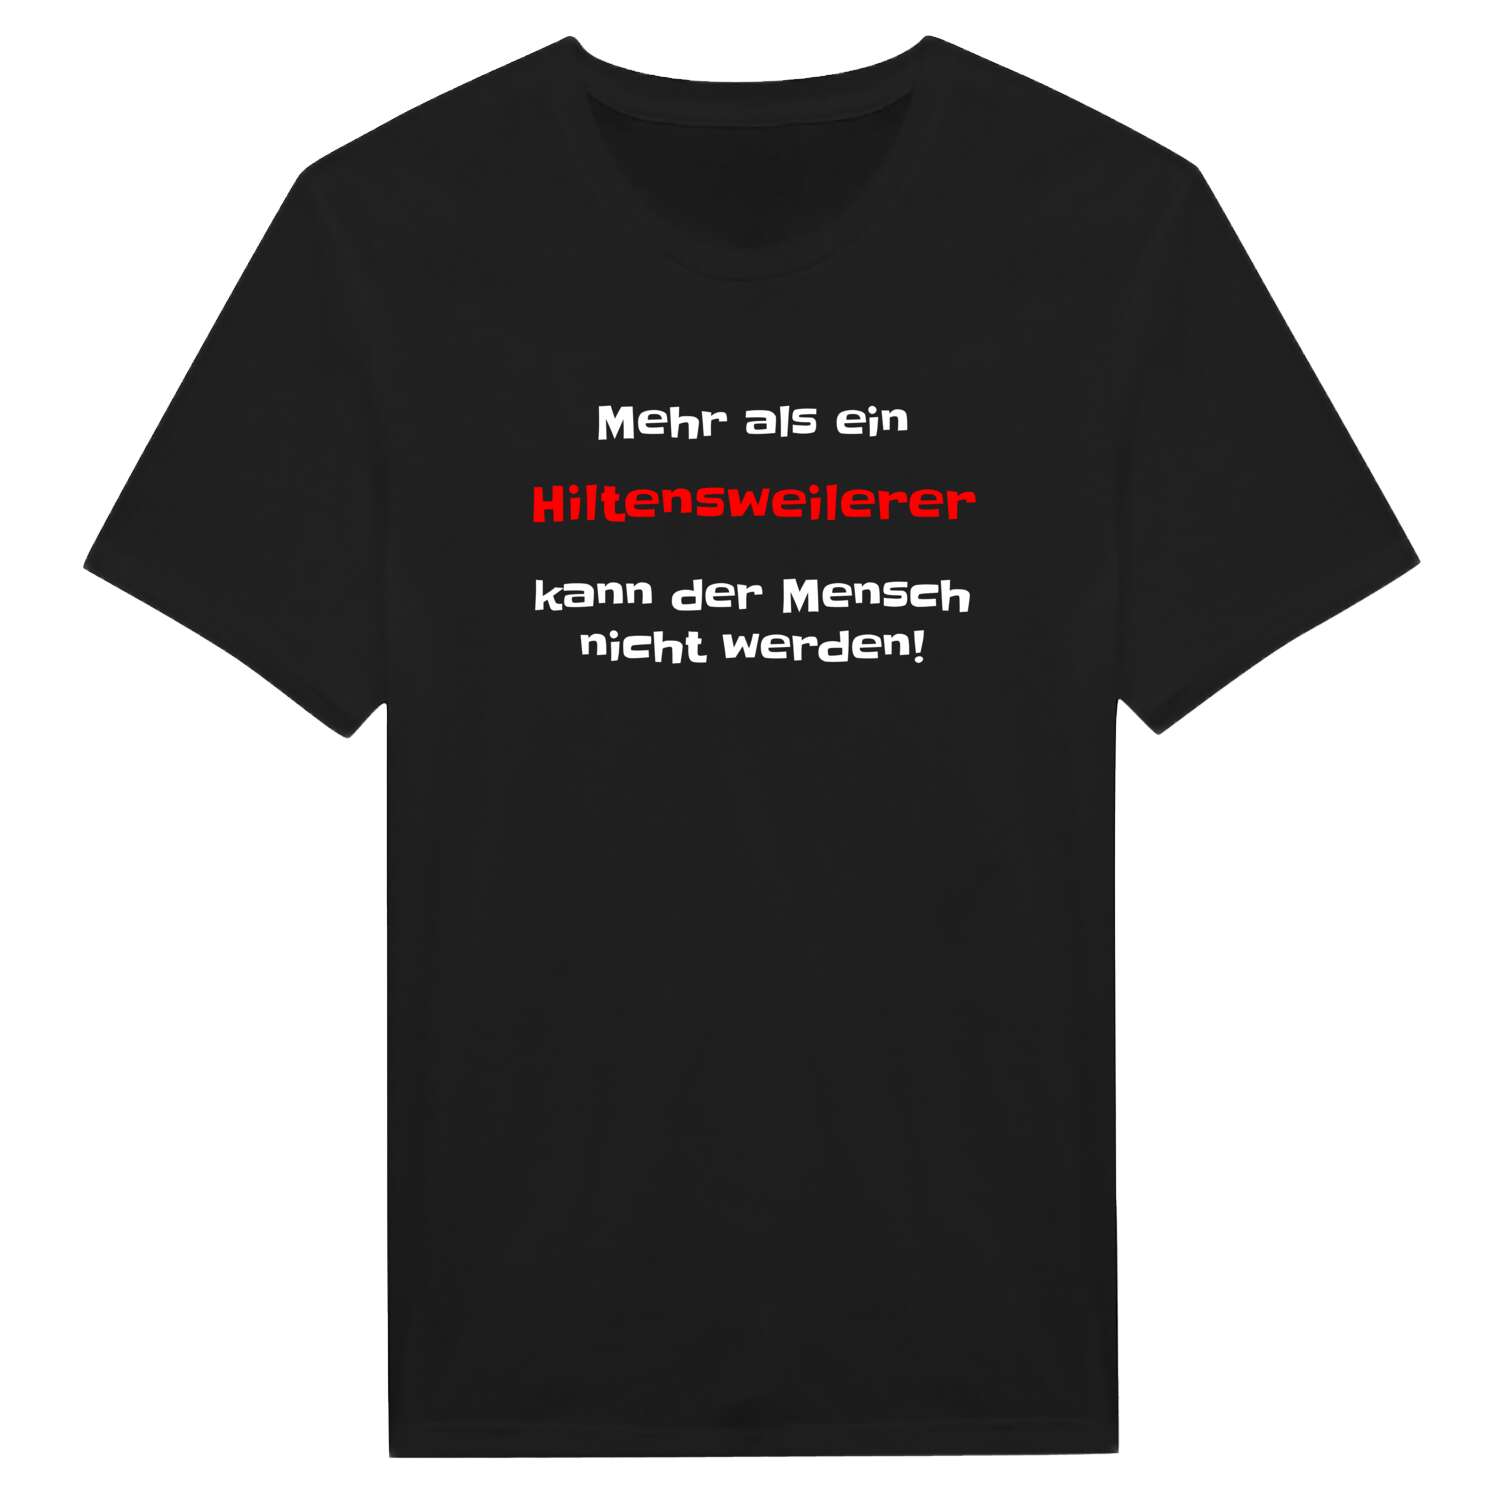 Hiltensweiler T-Shirt »Mehr als ein«